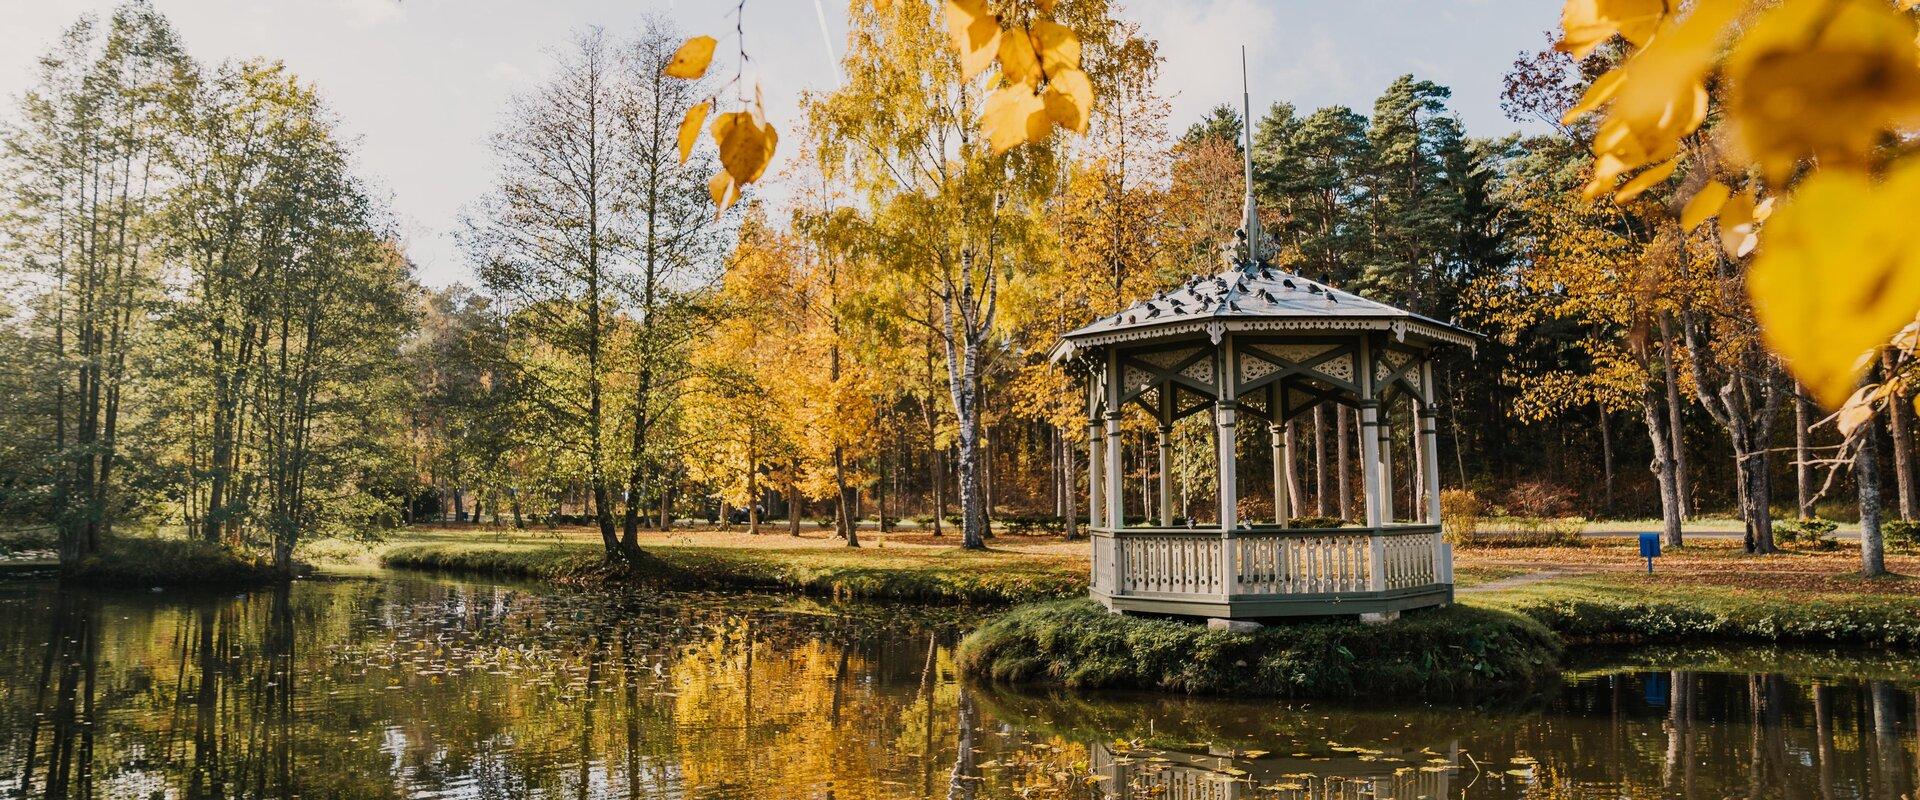 Narva-Jõesuu Hele park